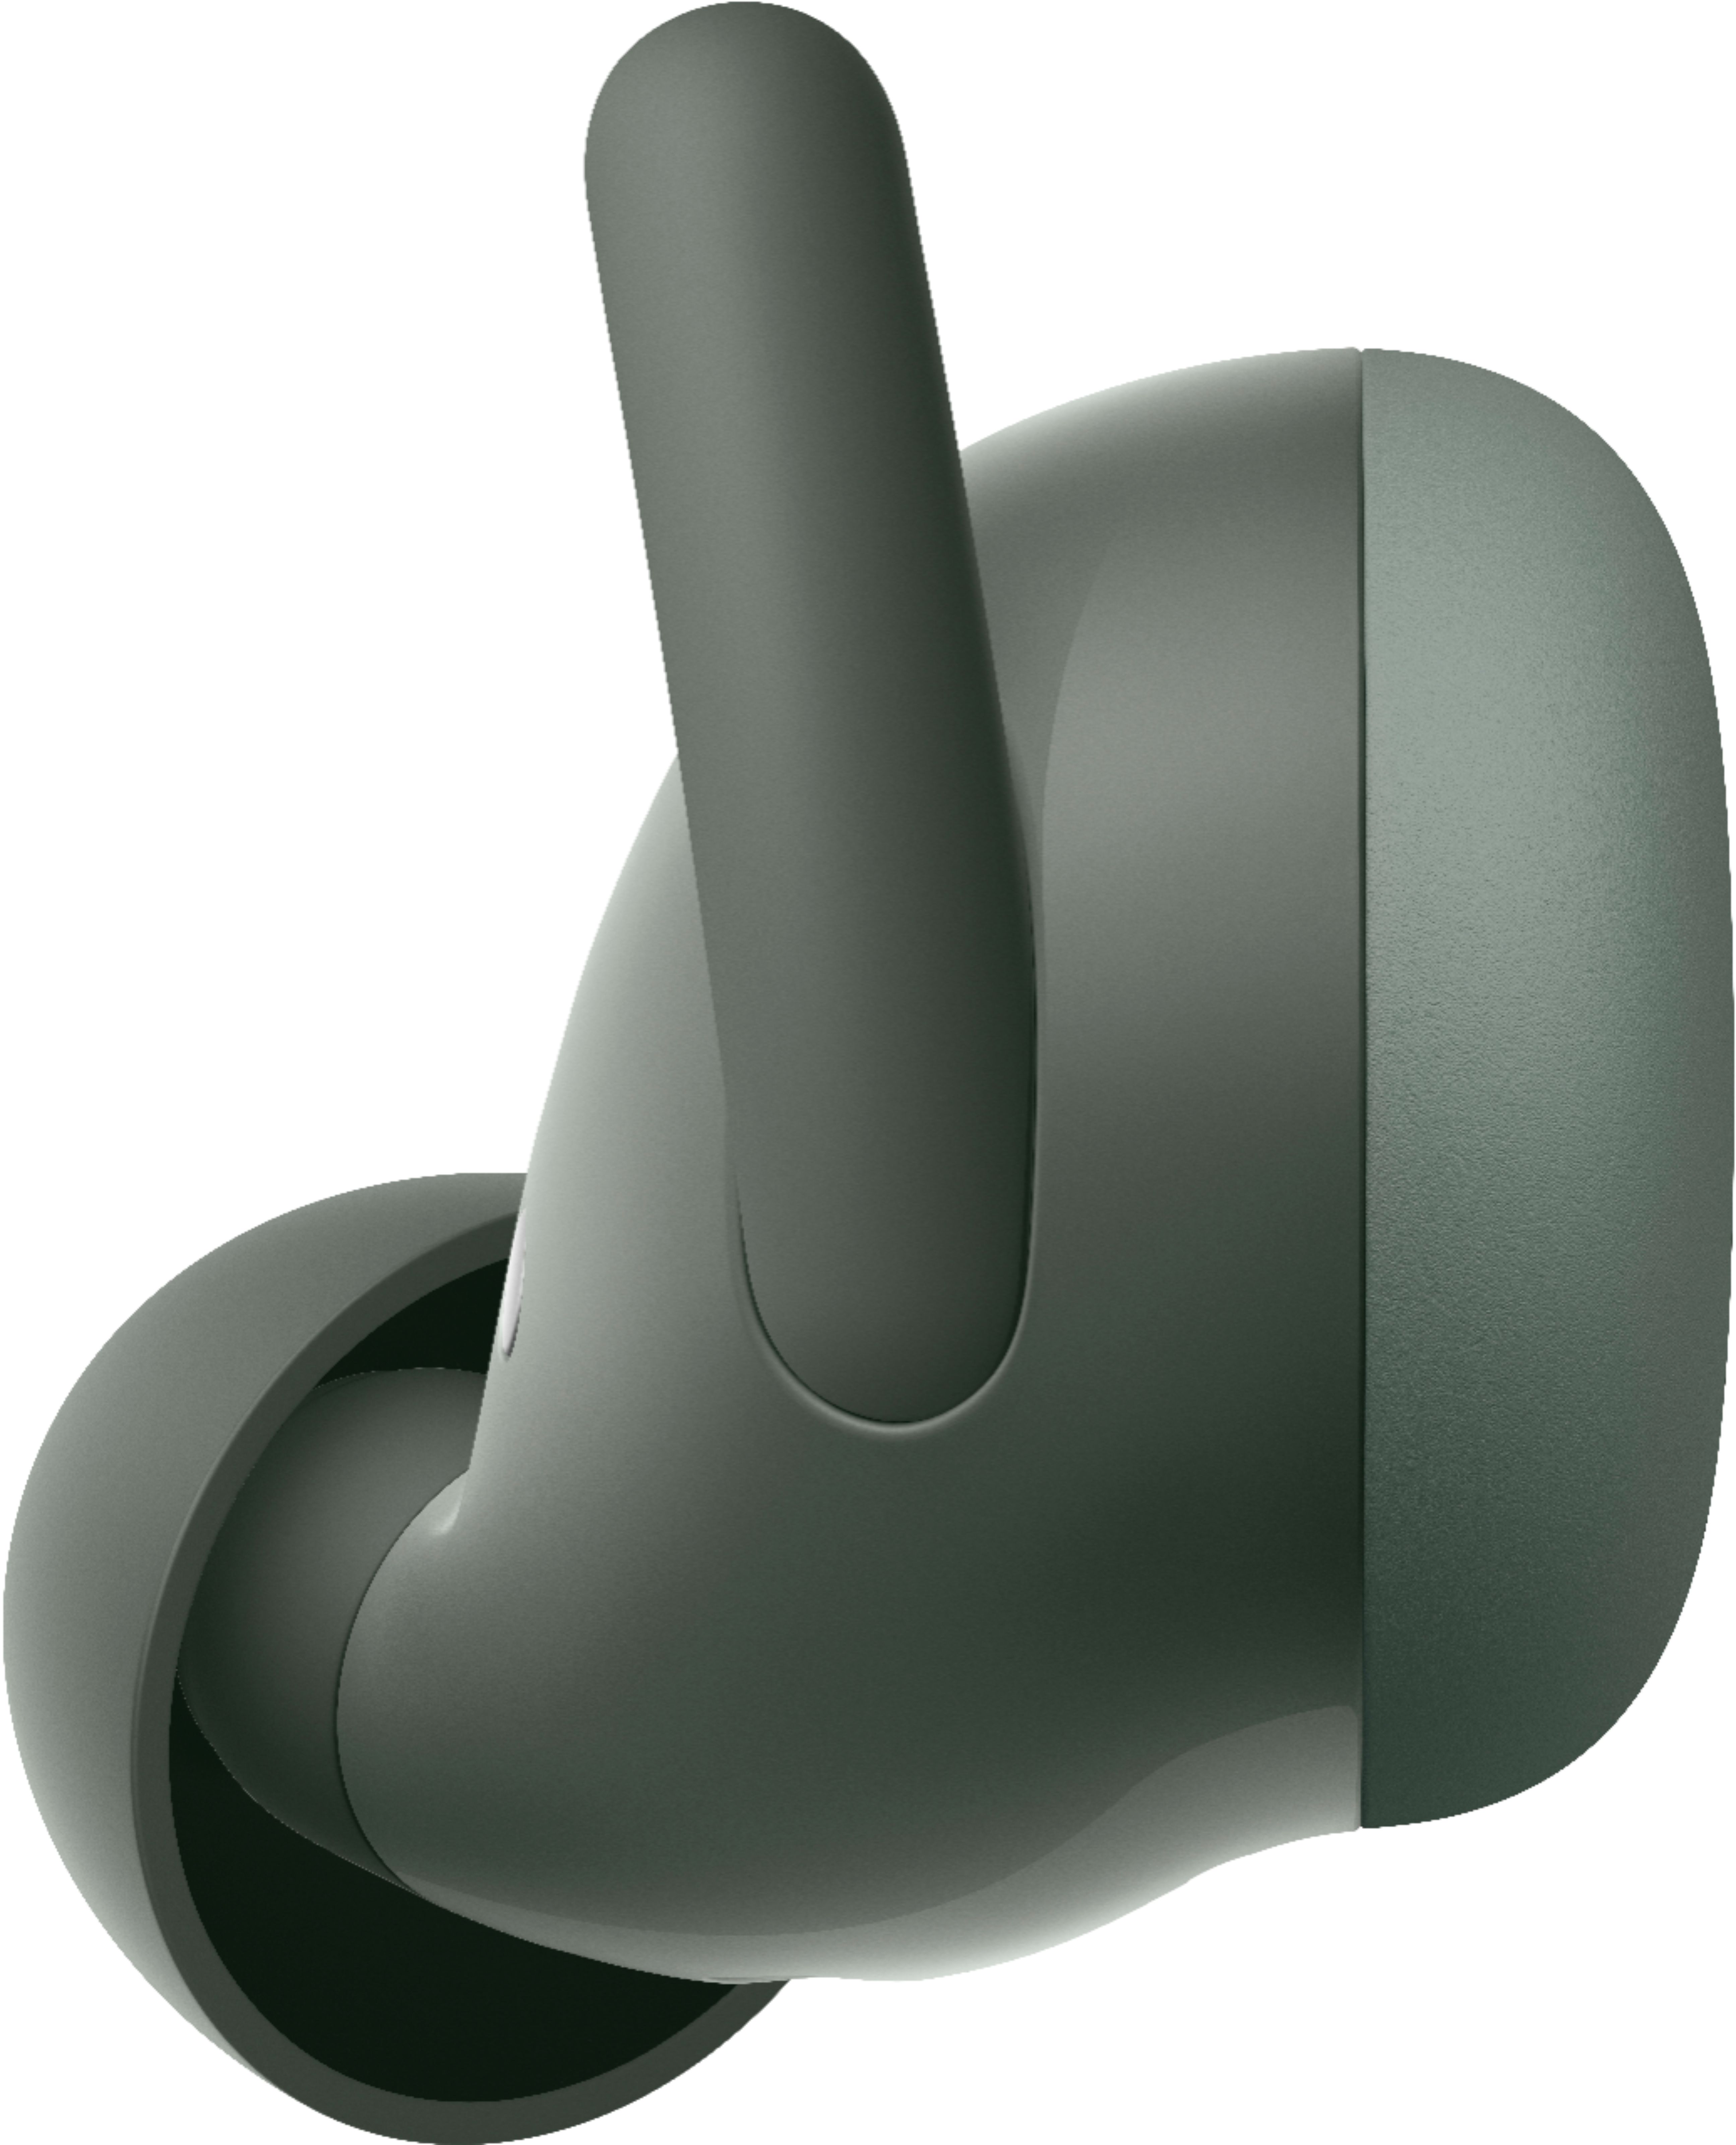 Google Pixel Buds A-Series True Wireless In-Ear Headphones Olive 